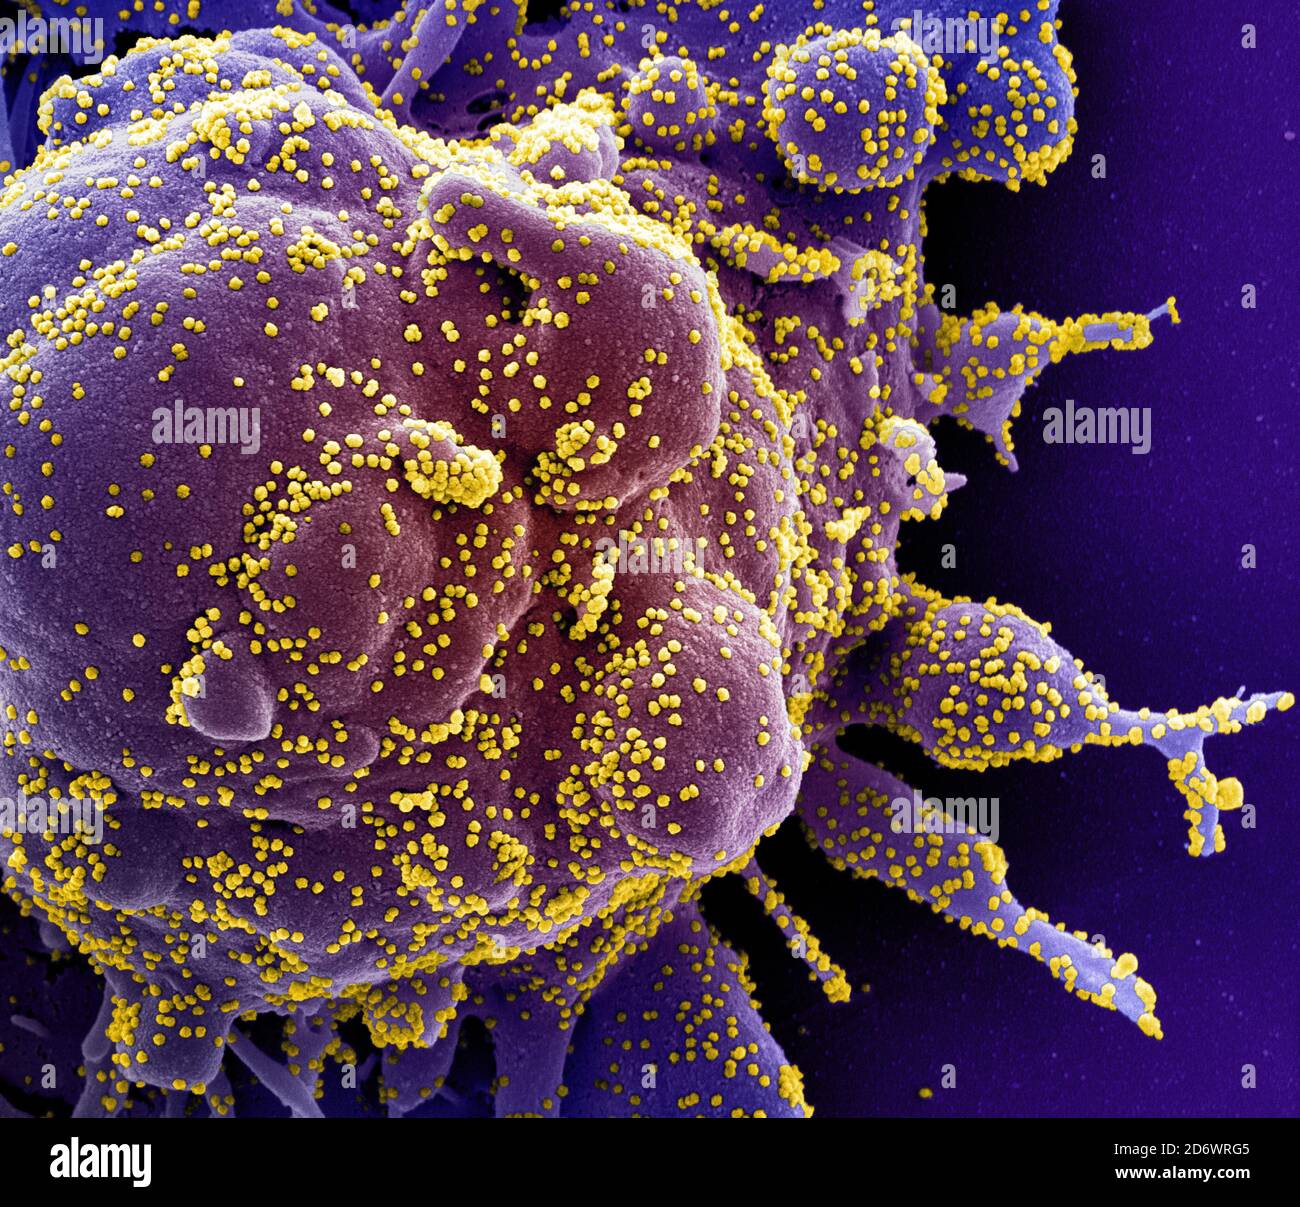 Micrografía electrónica de exploración coloreada de una célula apoptótica (púrpura) muy infectada con partículas del virus SARS-COV-2 (amarillo), aislada de un paciente Foto de stock